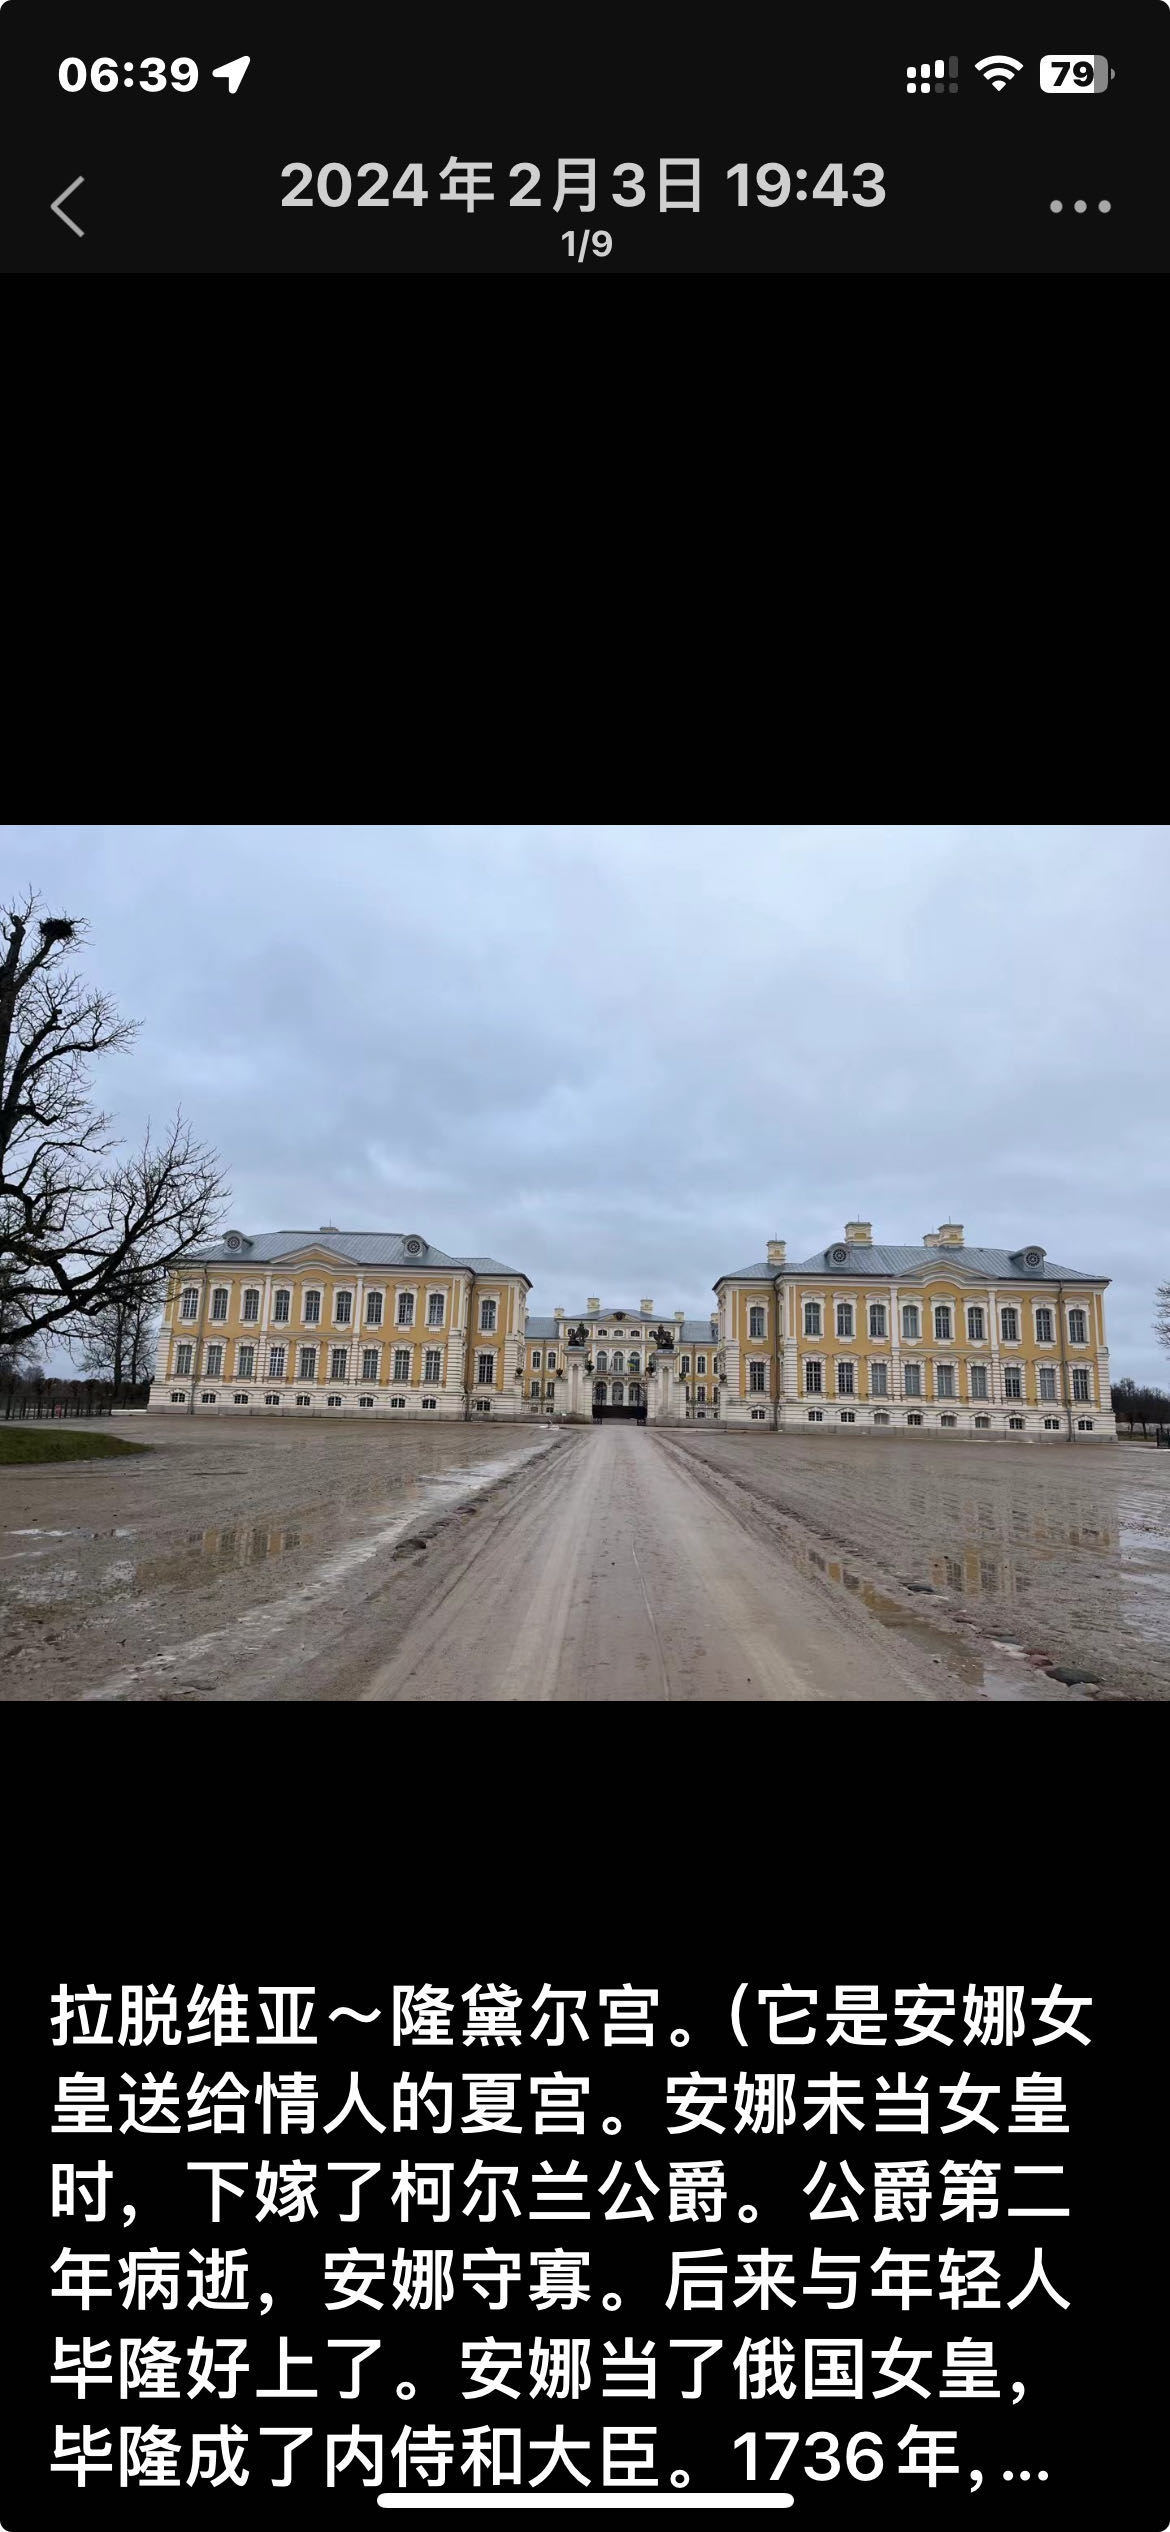 拉脱维亚～隆黛尔宫。 拉脱维亚·欧洲 1736年，女皇在拉脱维亚的隆黛尔为毕隆兴建夏宫。1740年，